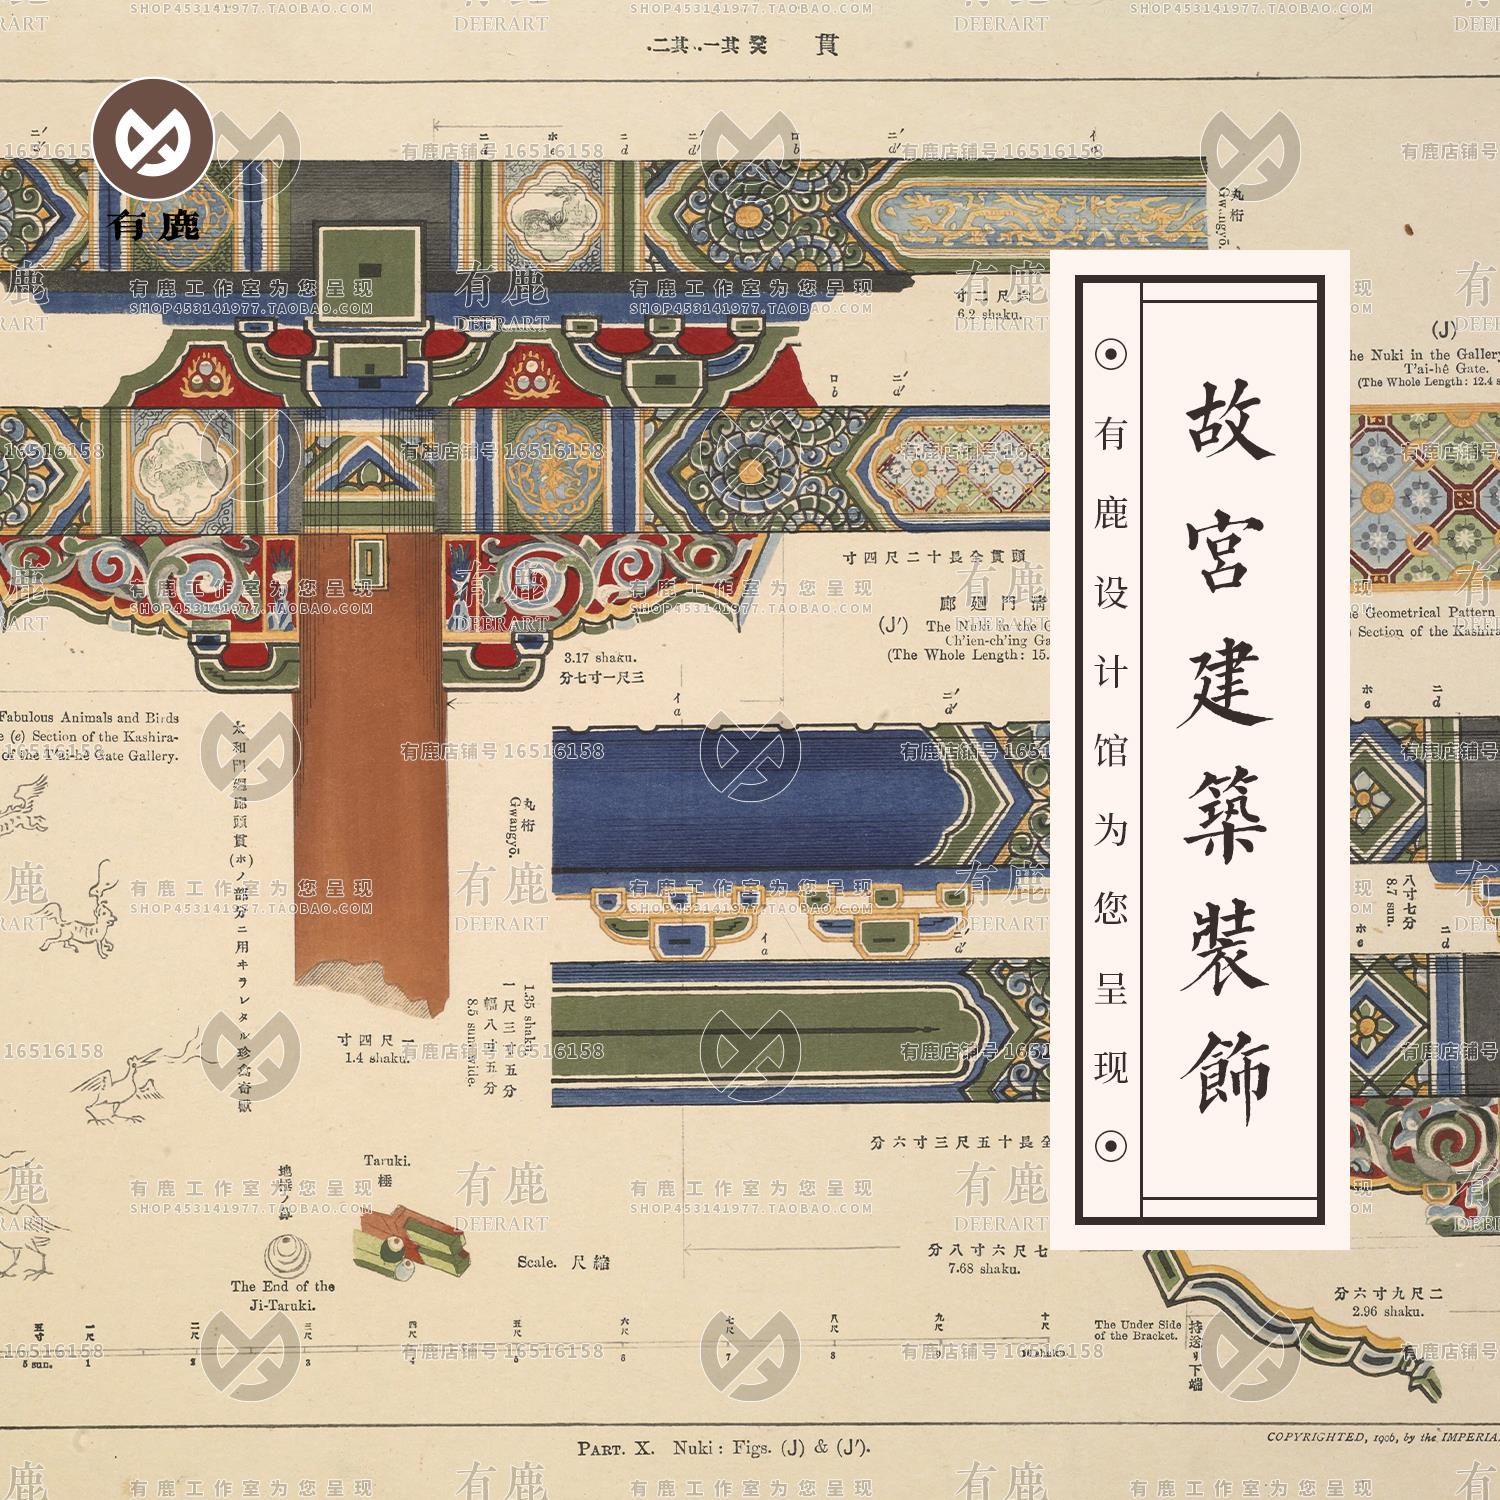 中国古代北京皇城建筑装饰图案纹样榫卯结构故宫配色图片参考素材